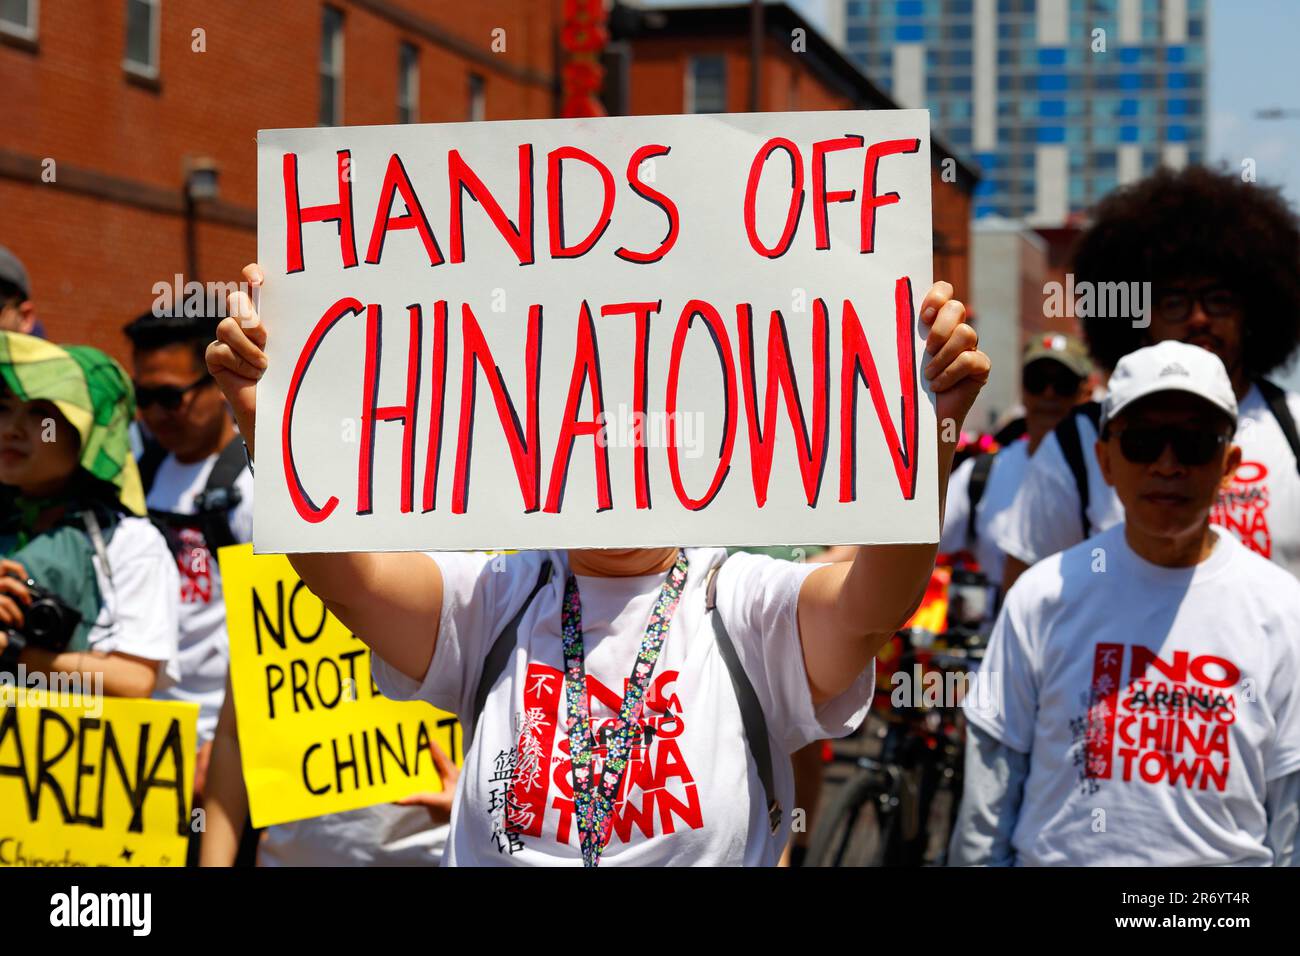 10 giugno 2023, Filadelfia. No Arena a Chinatown protesta marzo. Una donna ha in mano un cartello "Hands Off Chinatown" (vedi informazioni aggiuntive). Foto Stock